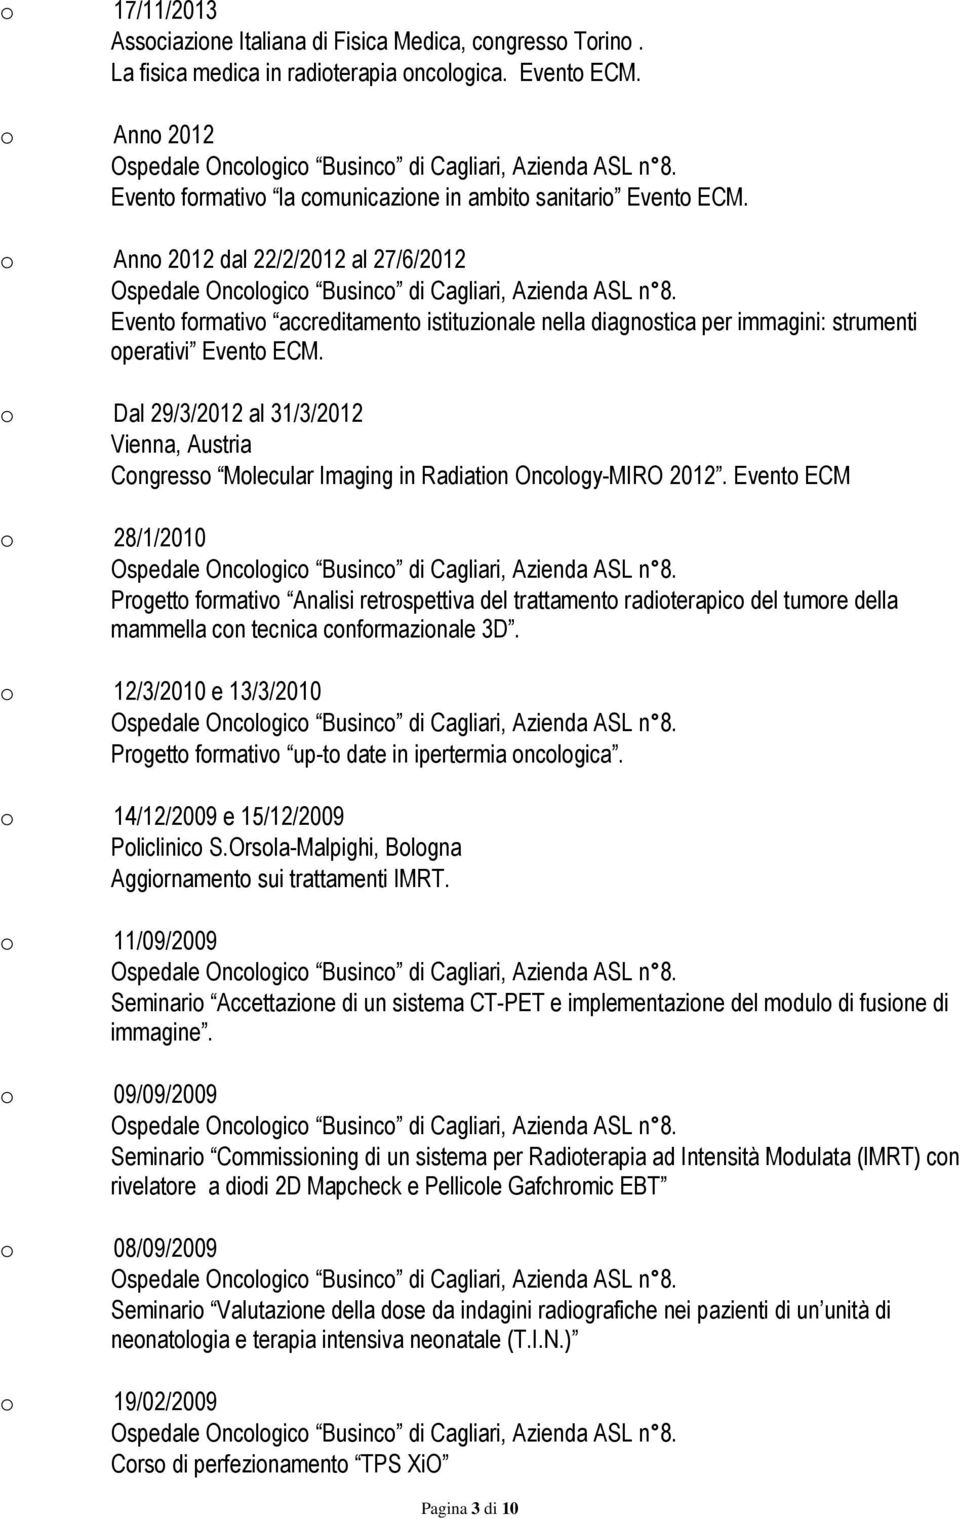 o Anno 2012 dal 22/2/2012 al 27/6/2012 Evento formativo accreditamento istituzionale nella diagnostica per immagini: strumenti operativi Evento ECM.